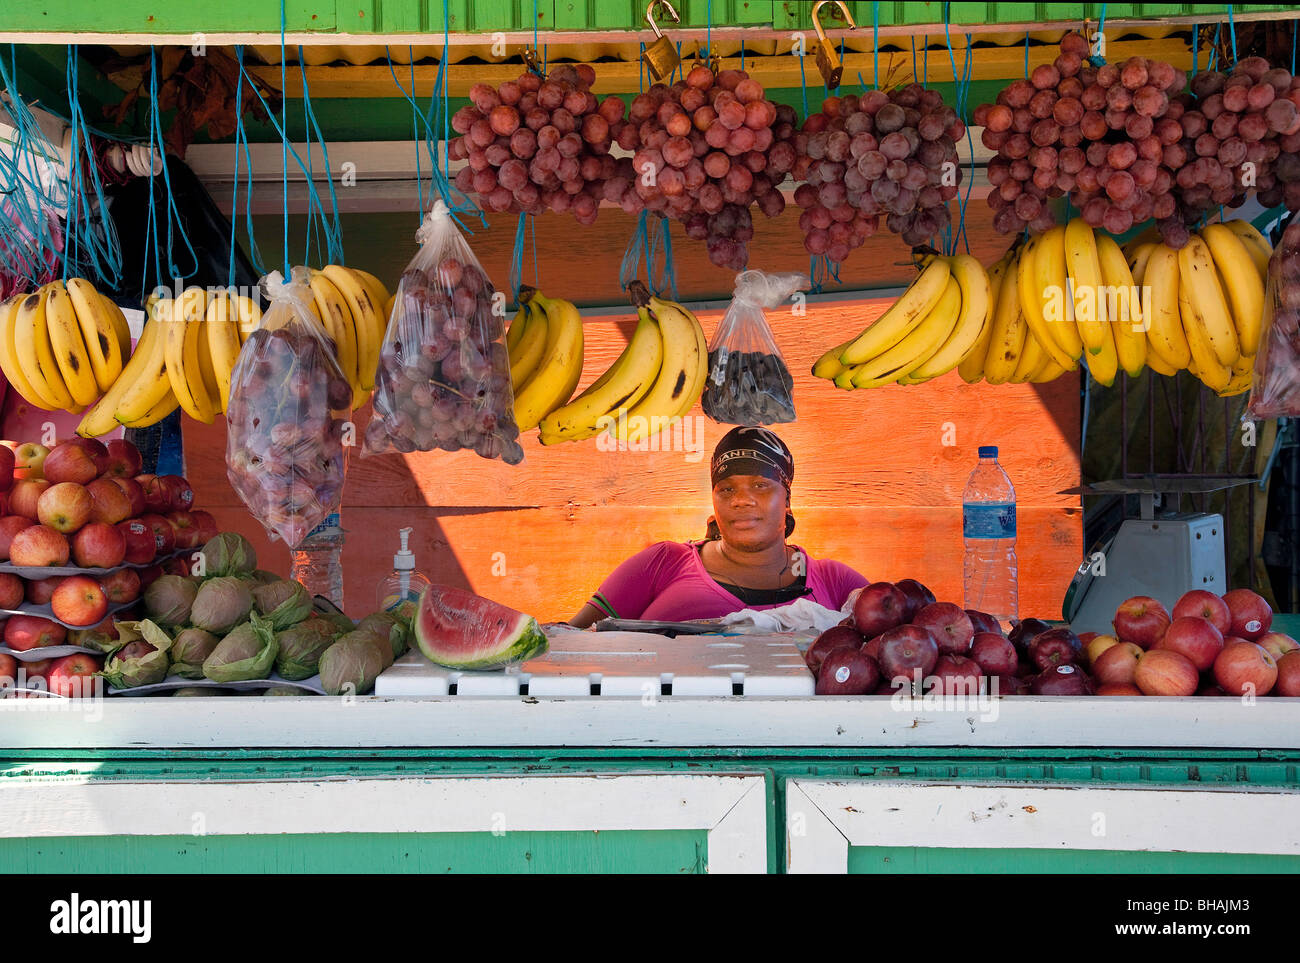 Vendeur de fruits présentoirs de comptoir le jour du marché aux pommes et fruits tropicaux sur afficher Tobago Caraïbes Banque D'Images